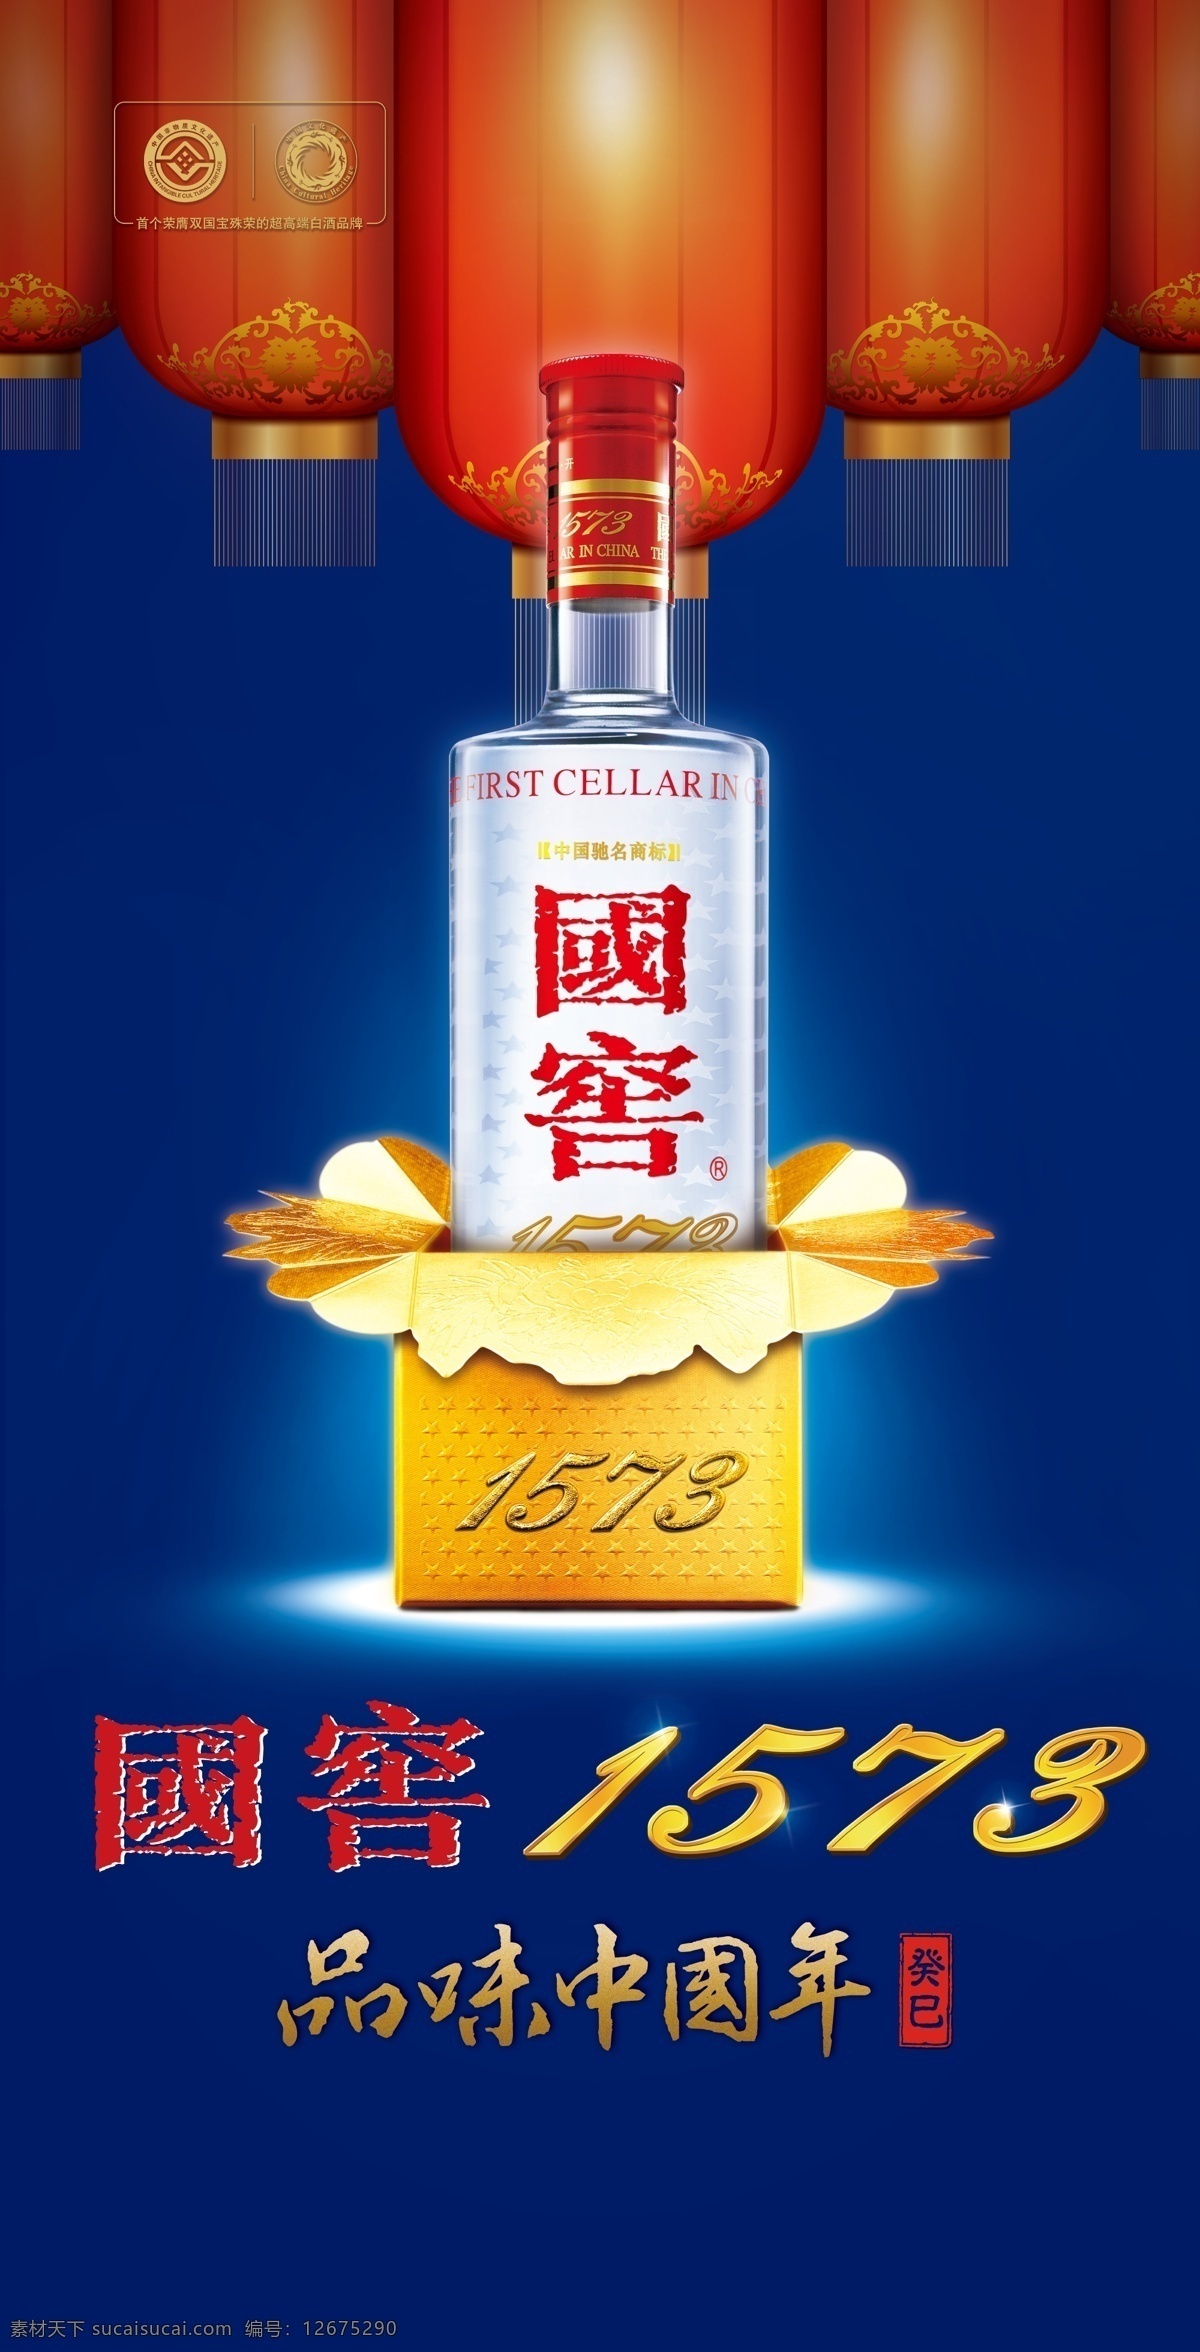 国窖 国窖1573 白酒 中国年 灯笼 梦之蓝 国窑 广告设计模板 源文件